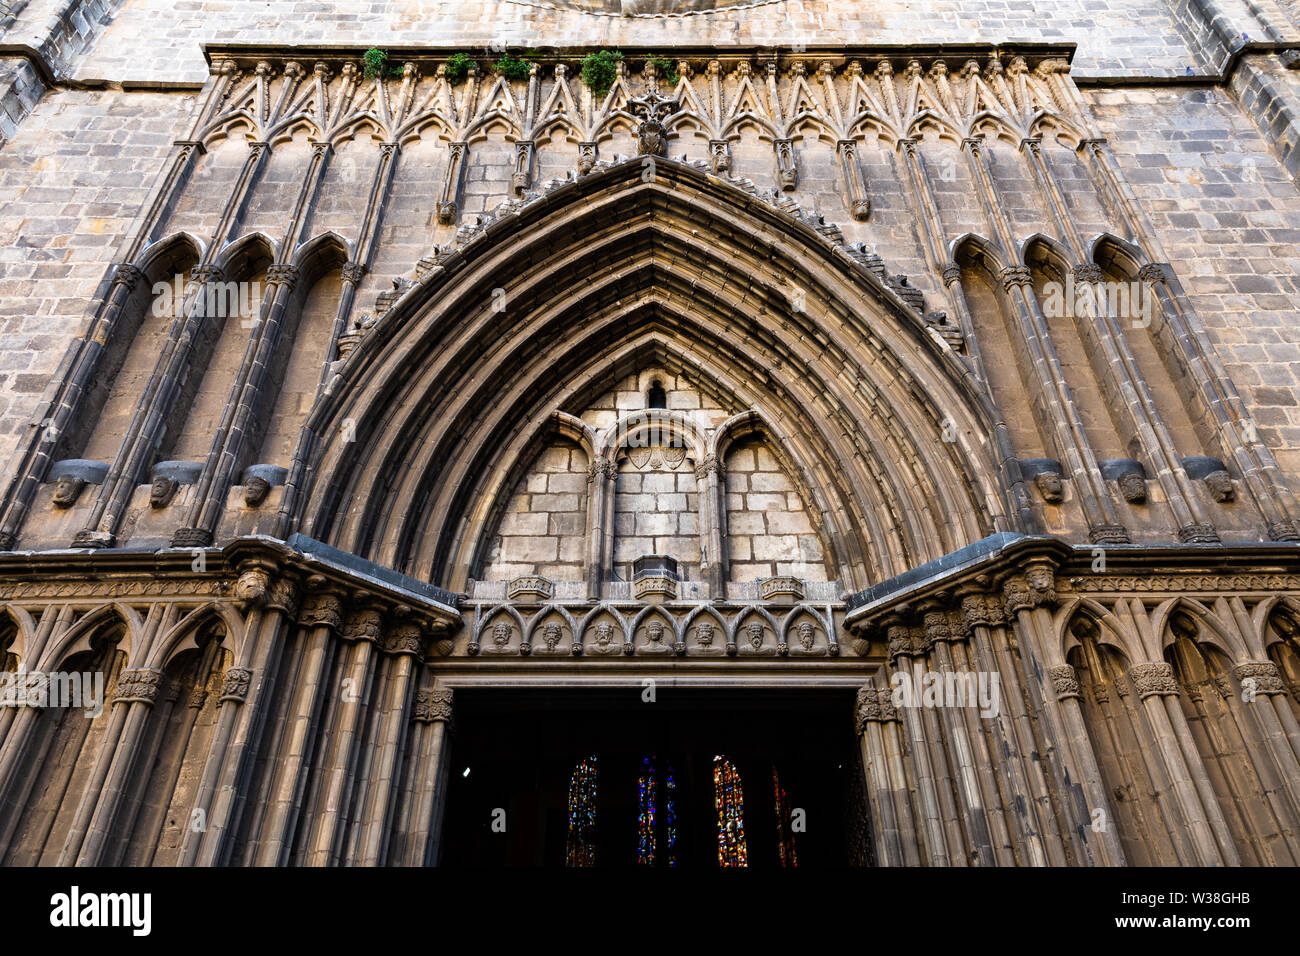 Esglesia de Santa Maria del Pi. Portail décoré en style gothique catalan typique. Barcelone, Espagne. Banque D'Images